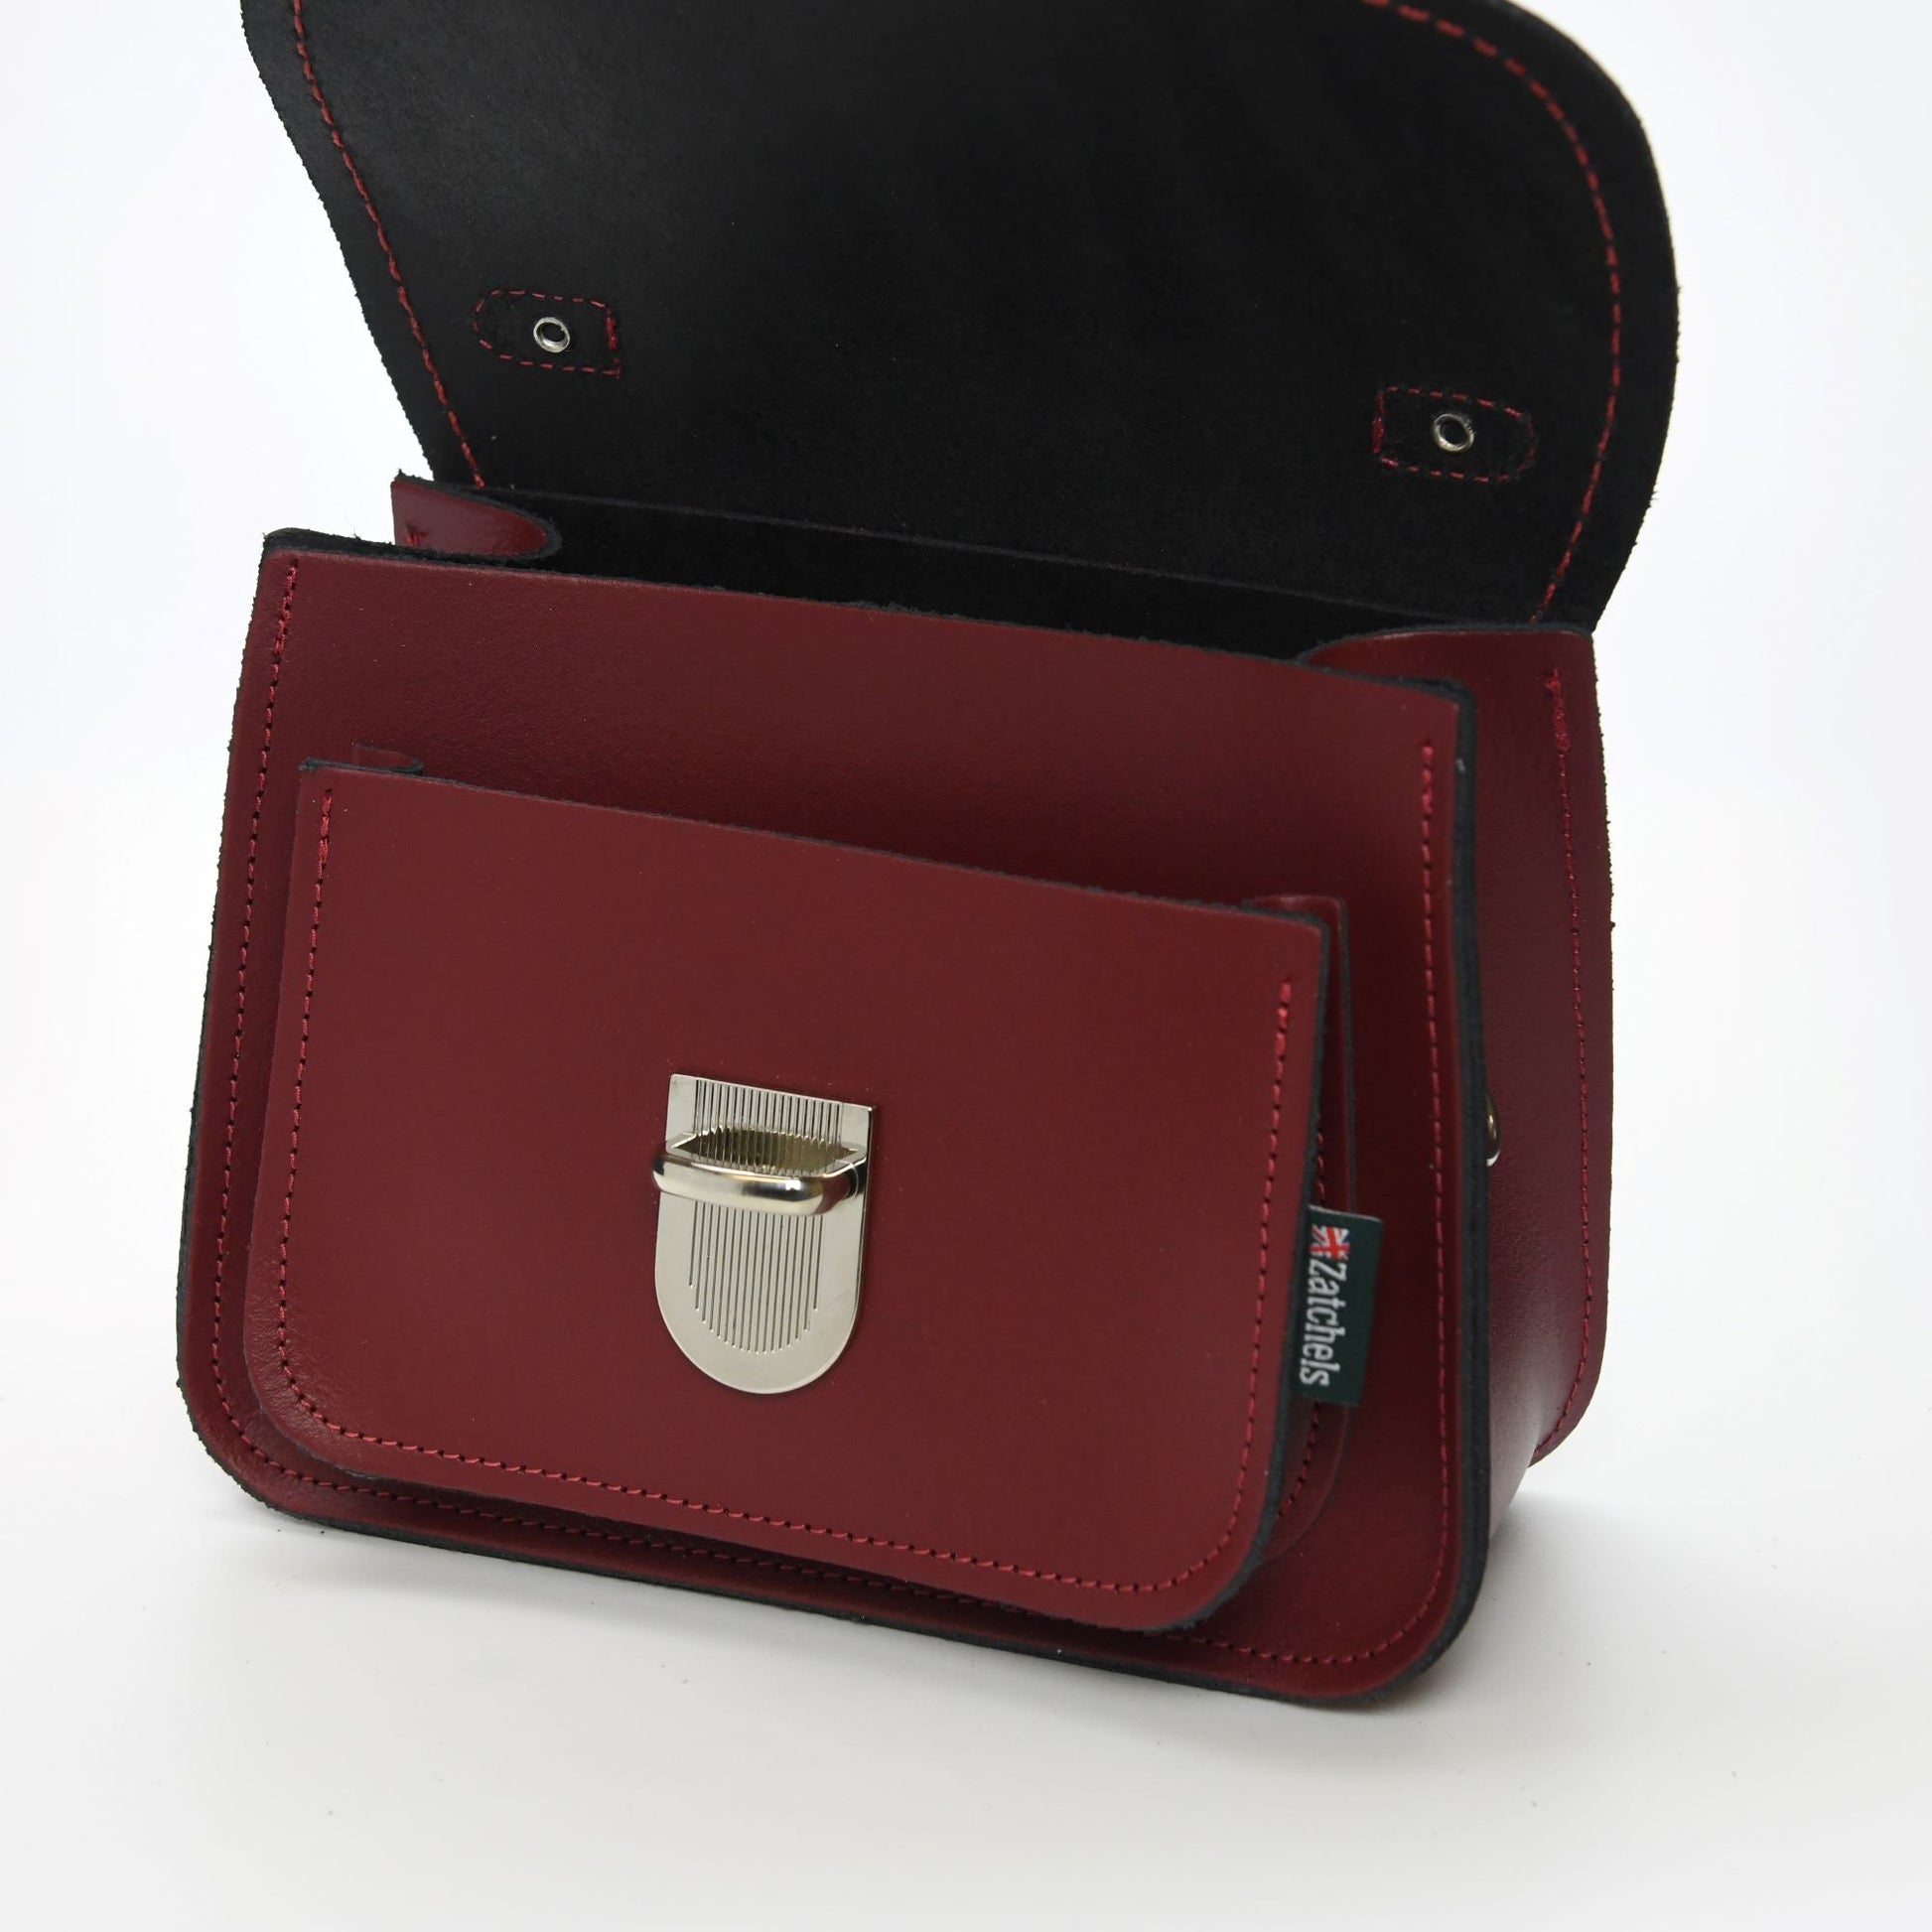 Luna Handmade Leather Bag - Oxblood Red-2